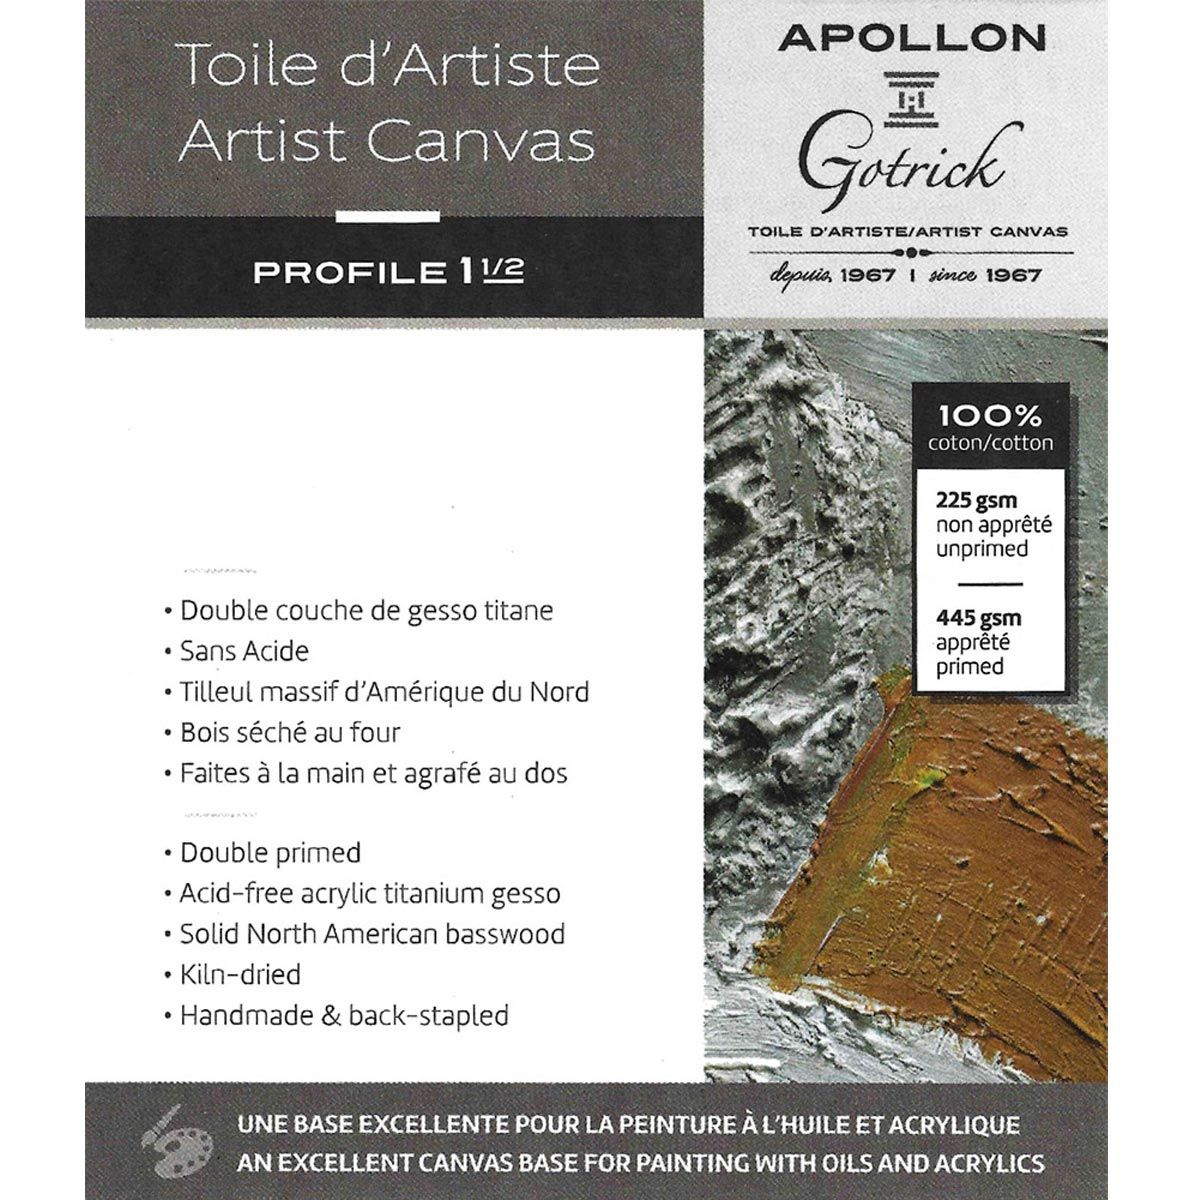 Apollon Gotrick Gallery Artist Canvas Profile 1½" - 14" x 18"